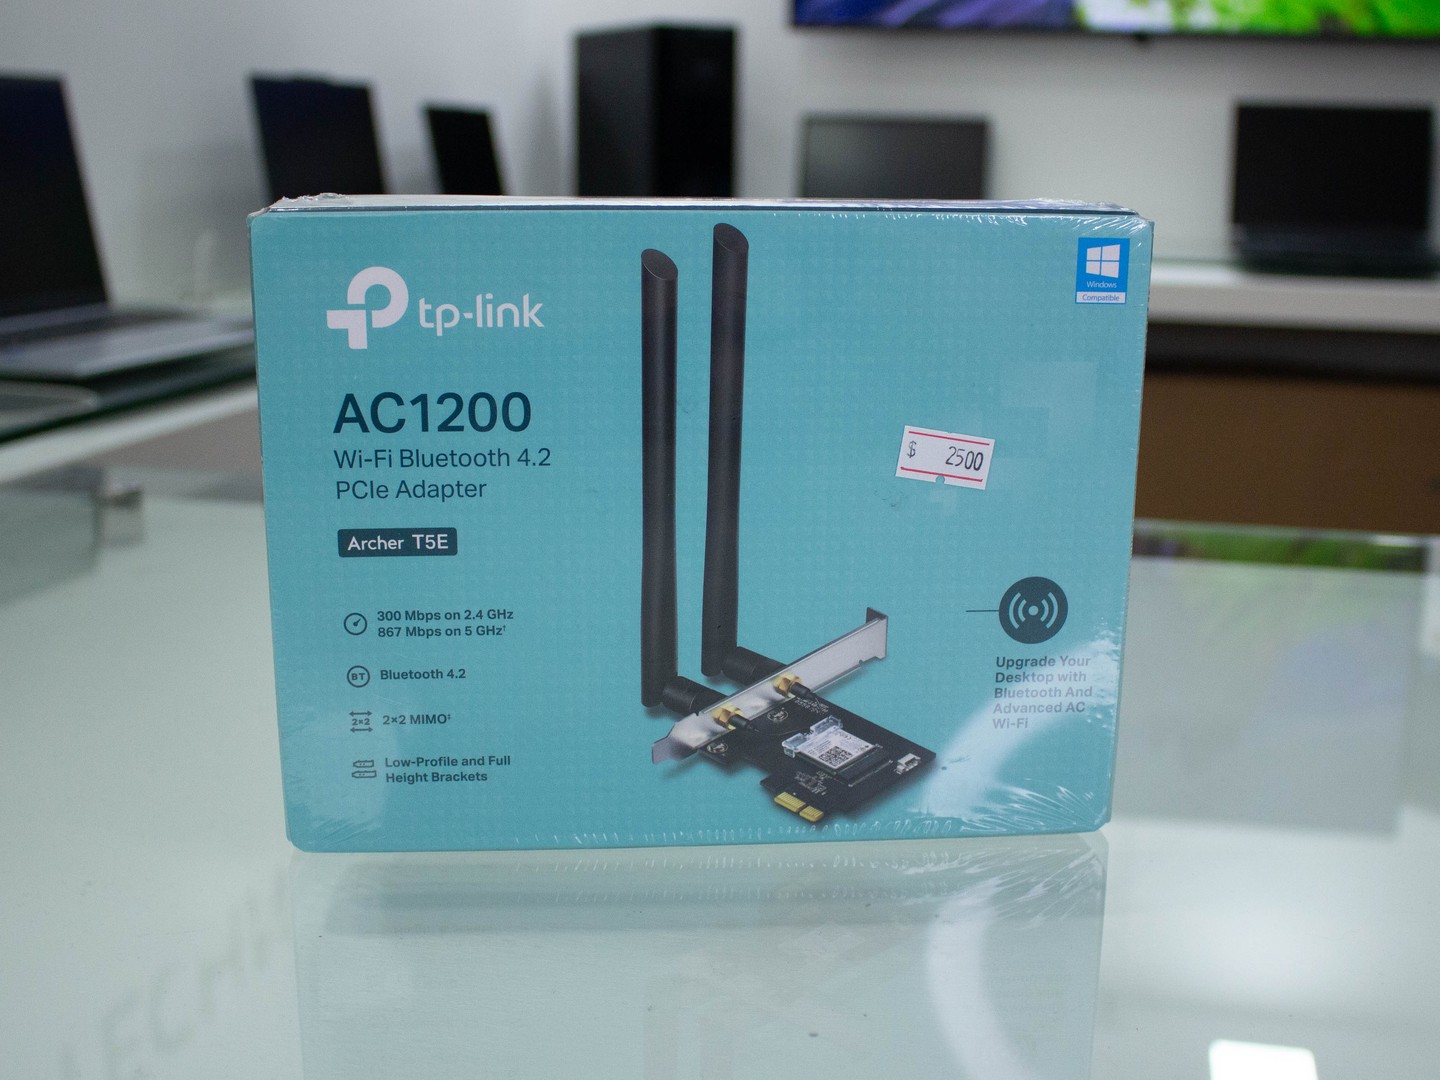 computadoras y laptops - WiFi Bluetooth 4.2 PCI TP-Link AC1200 PCIe PC (Archer T5E)
